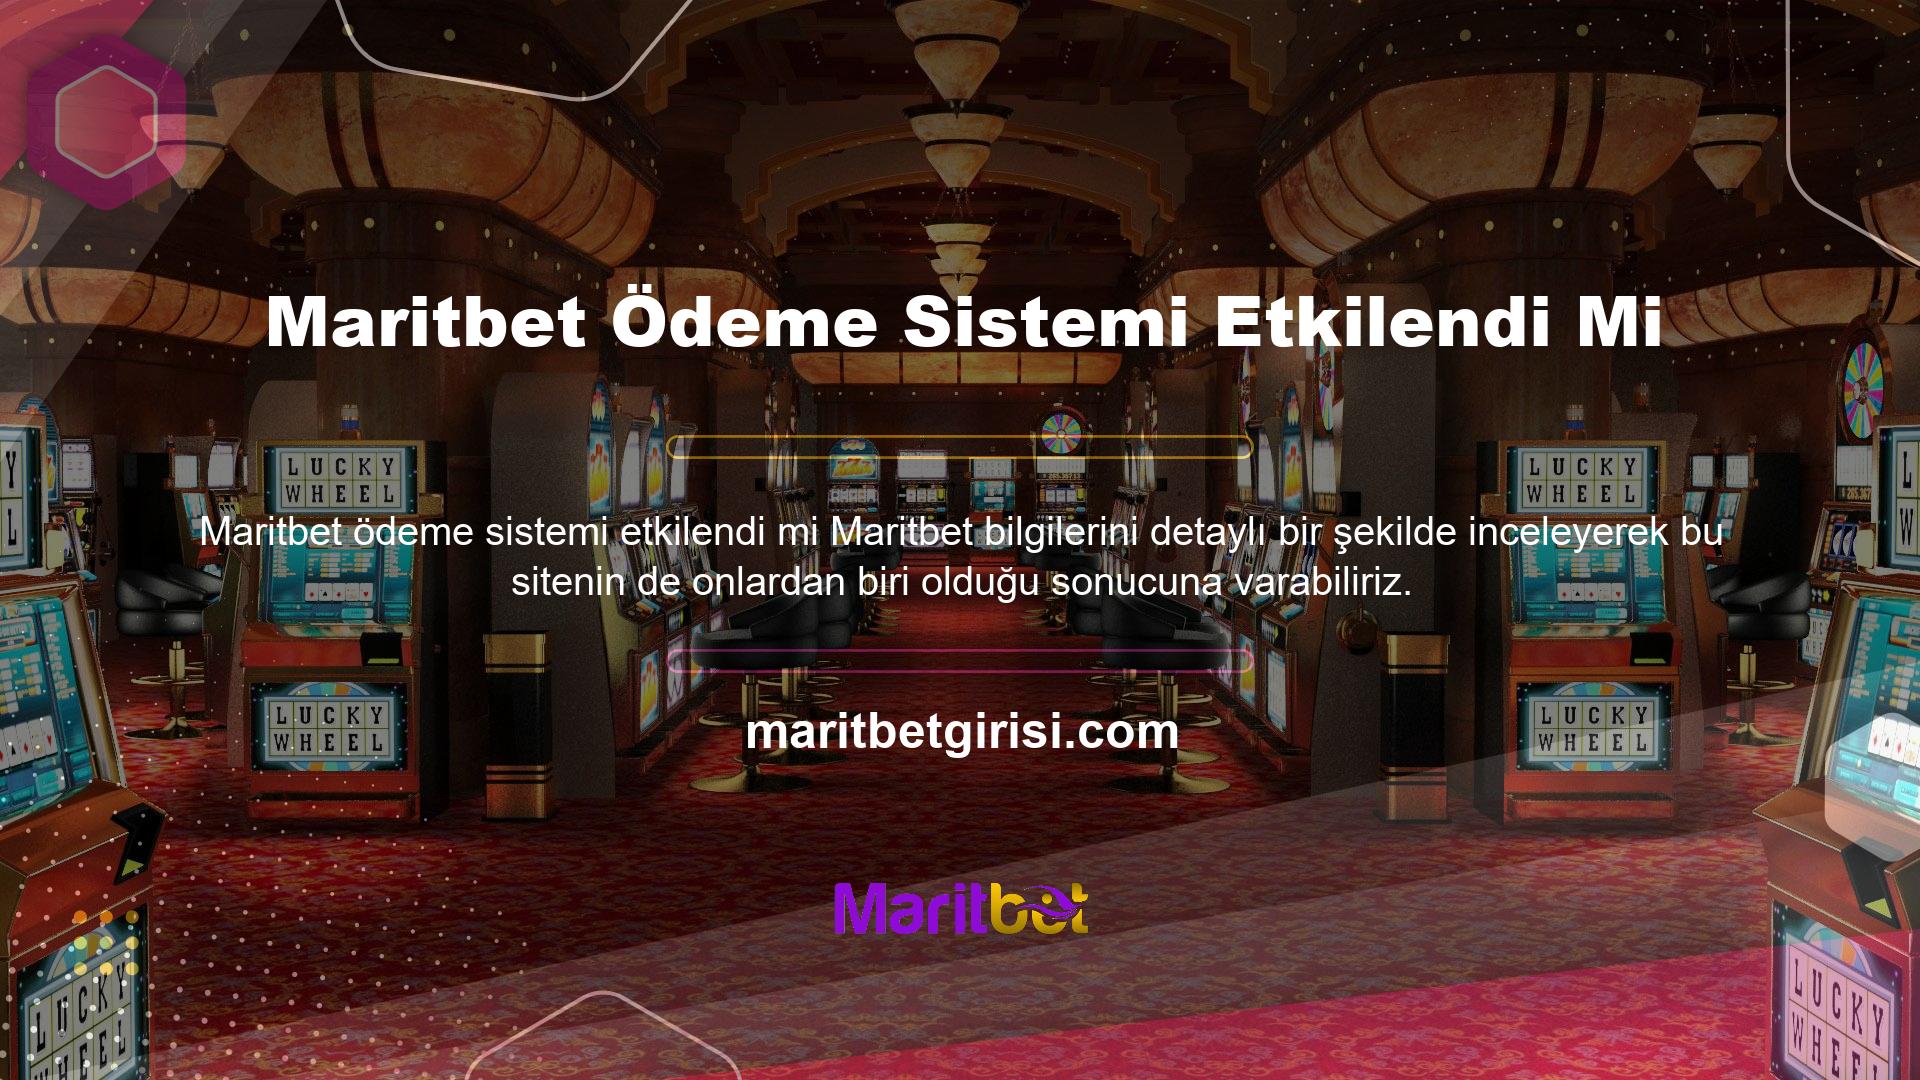 Türk sitesi, Türkiye'ye ve diğer ülkelere hizmet verdiği için sitenin sunduklarına değerli bir katkıdır